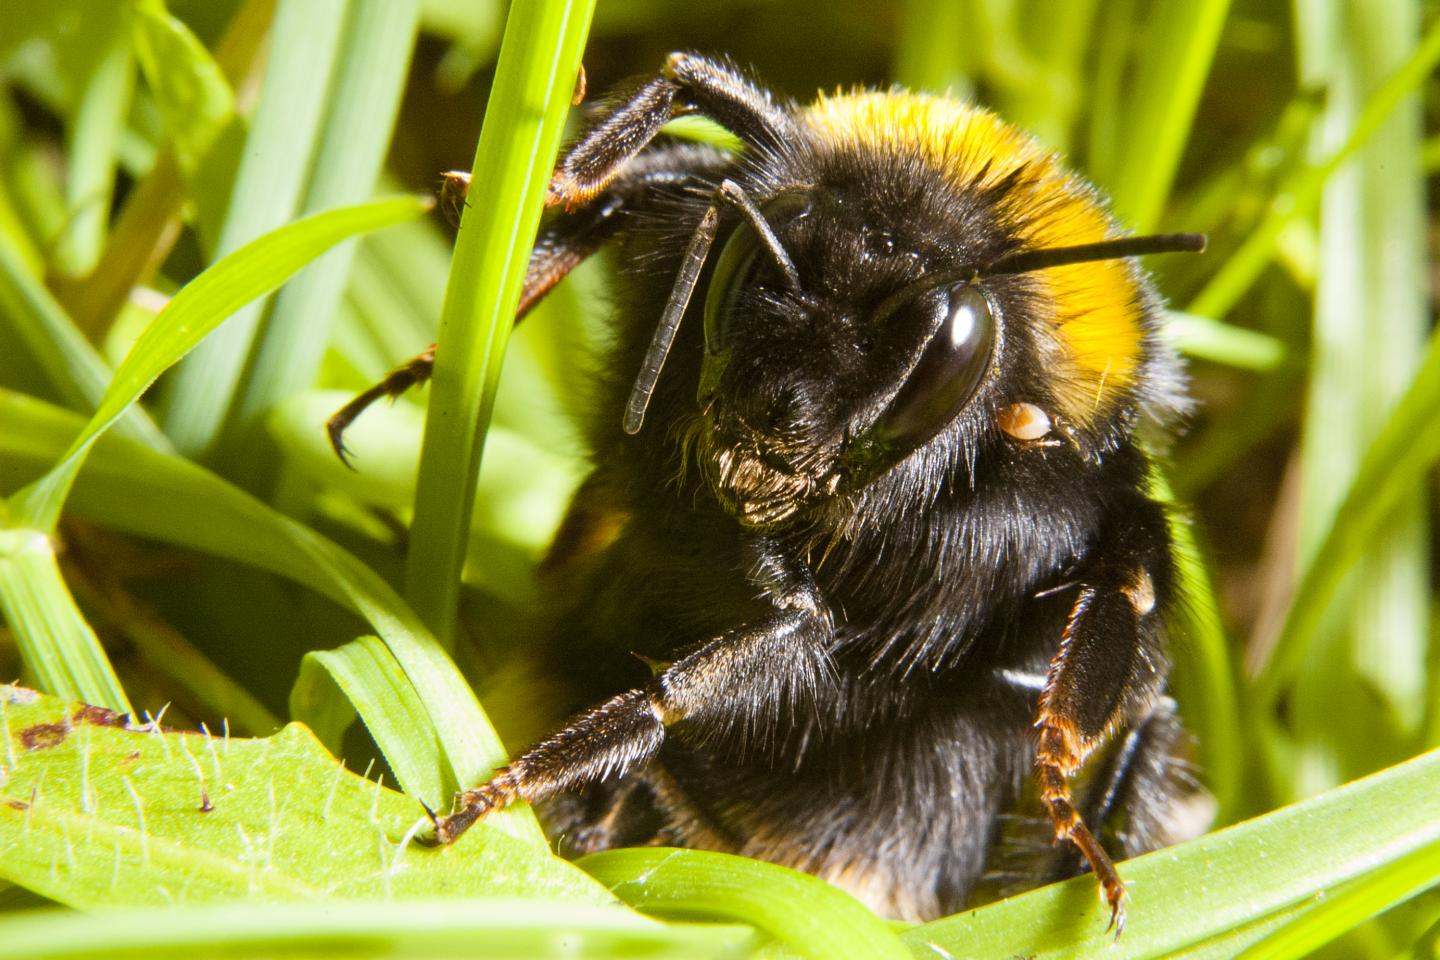 Queen Bumblebee